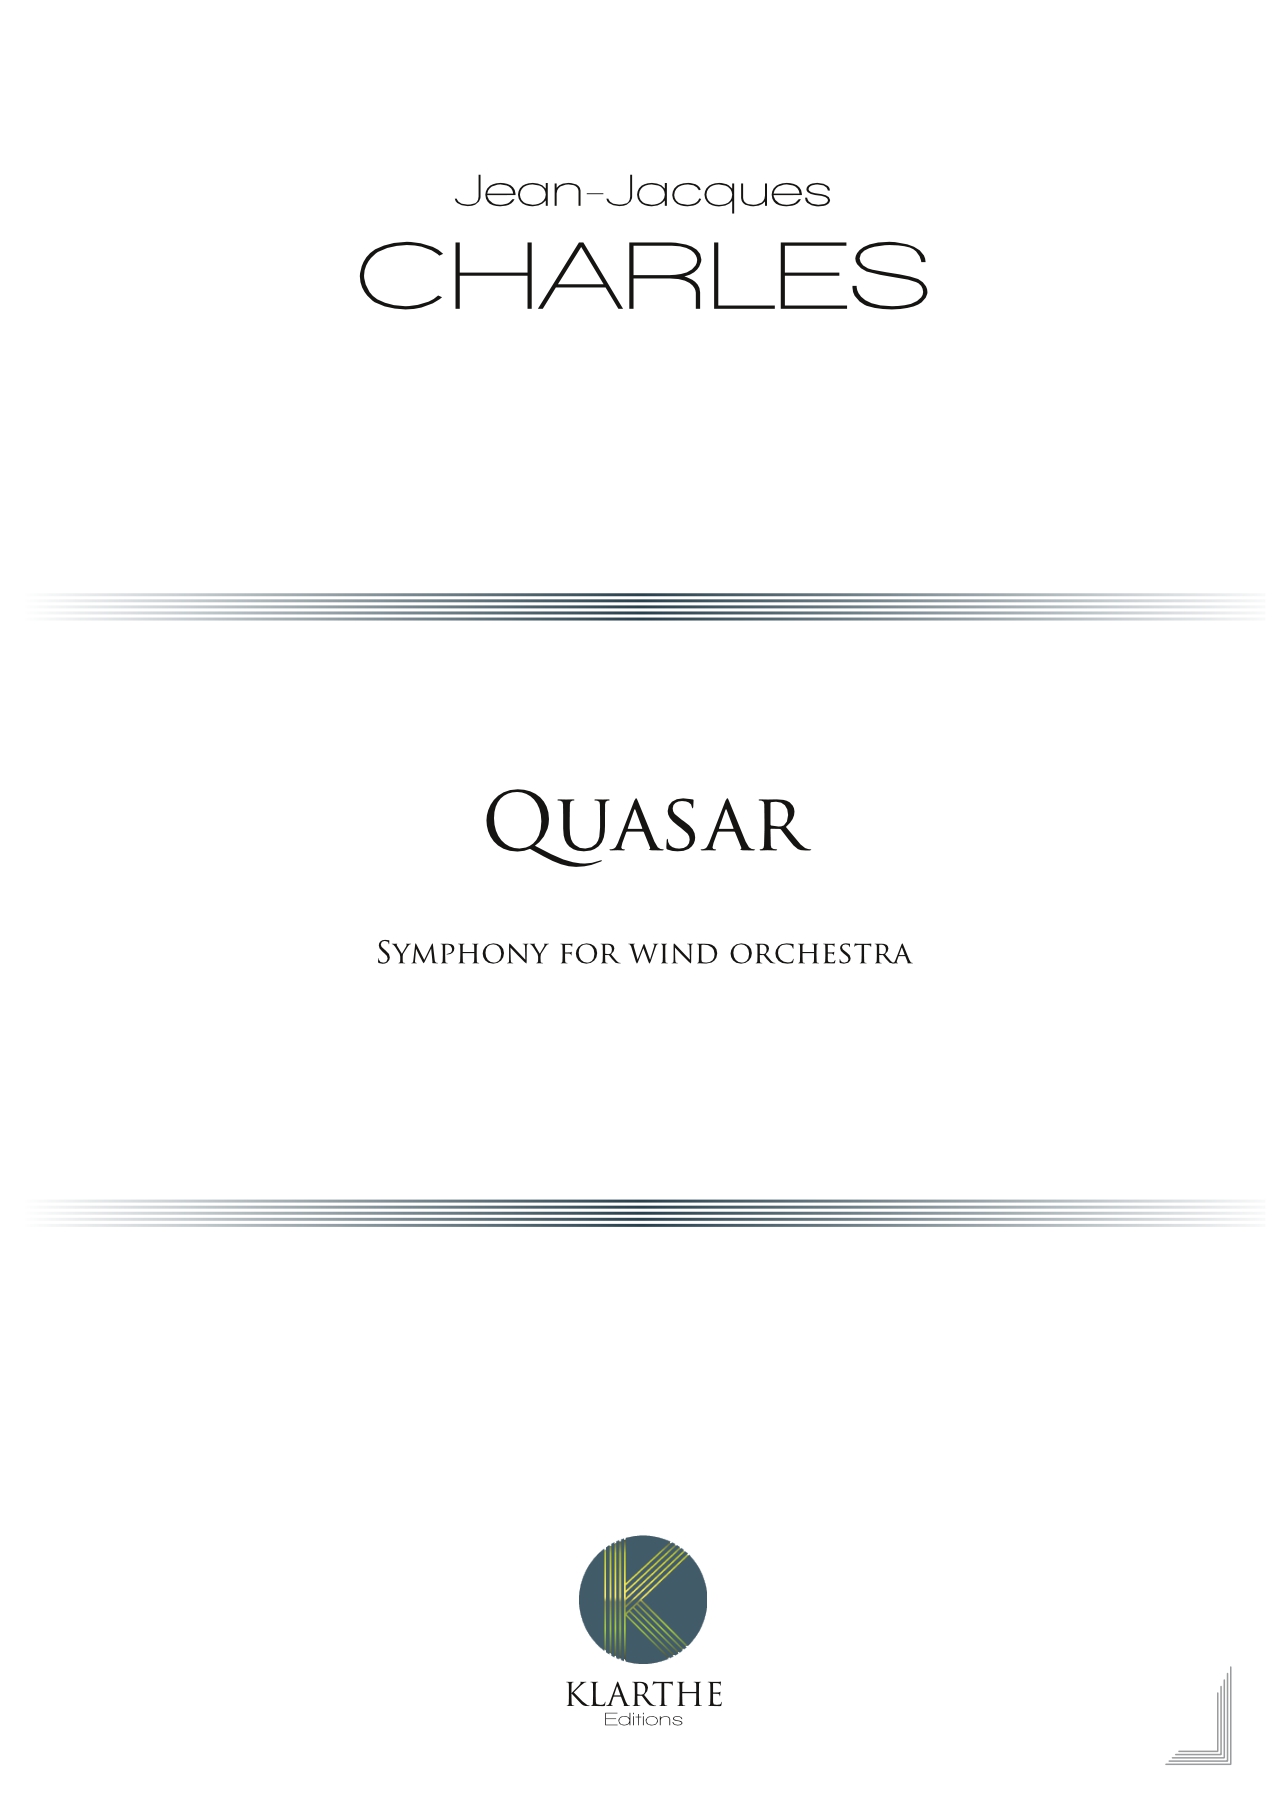 Quasar (CHARLES JEAN-JACQUES)